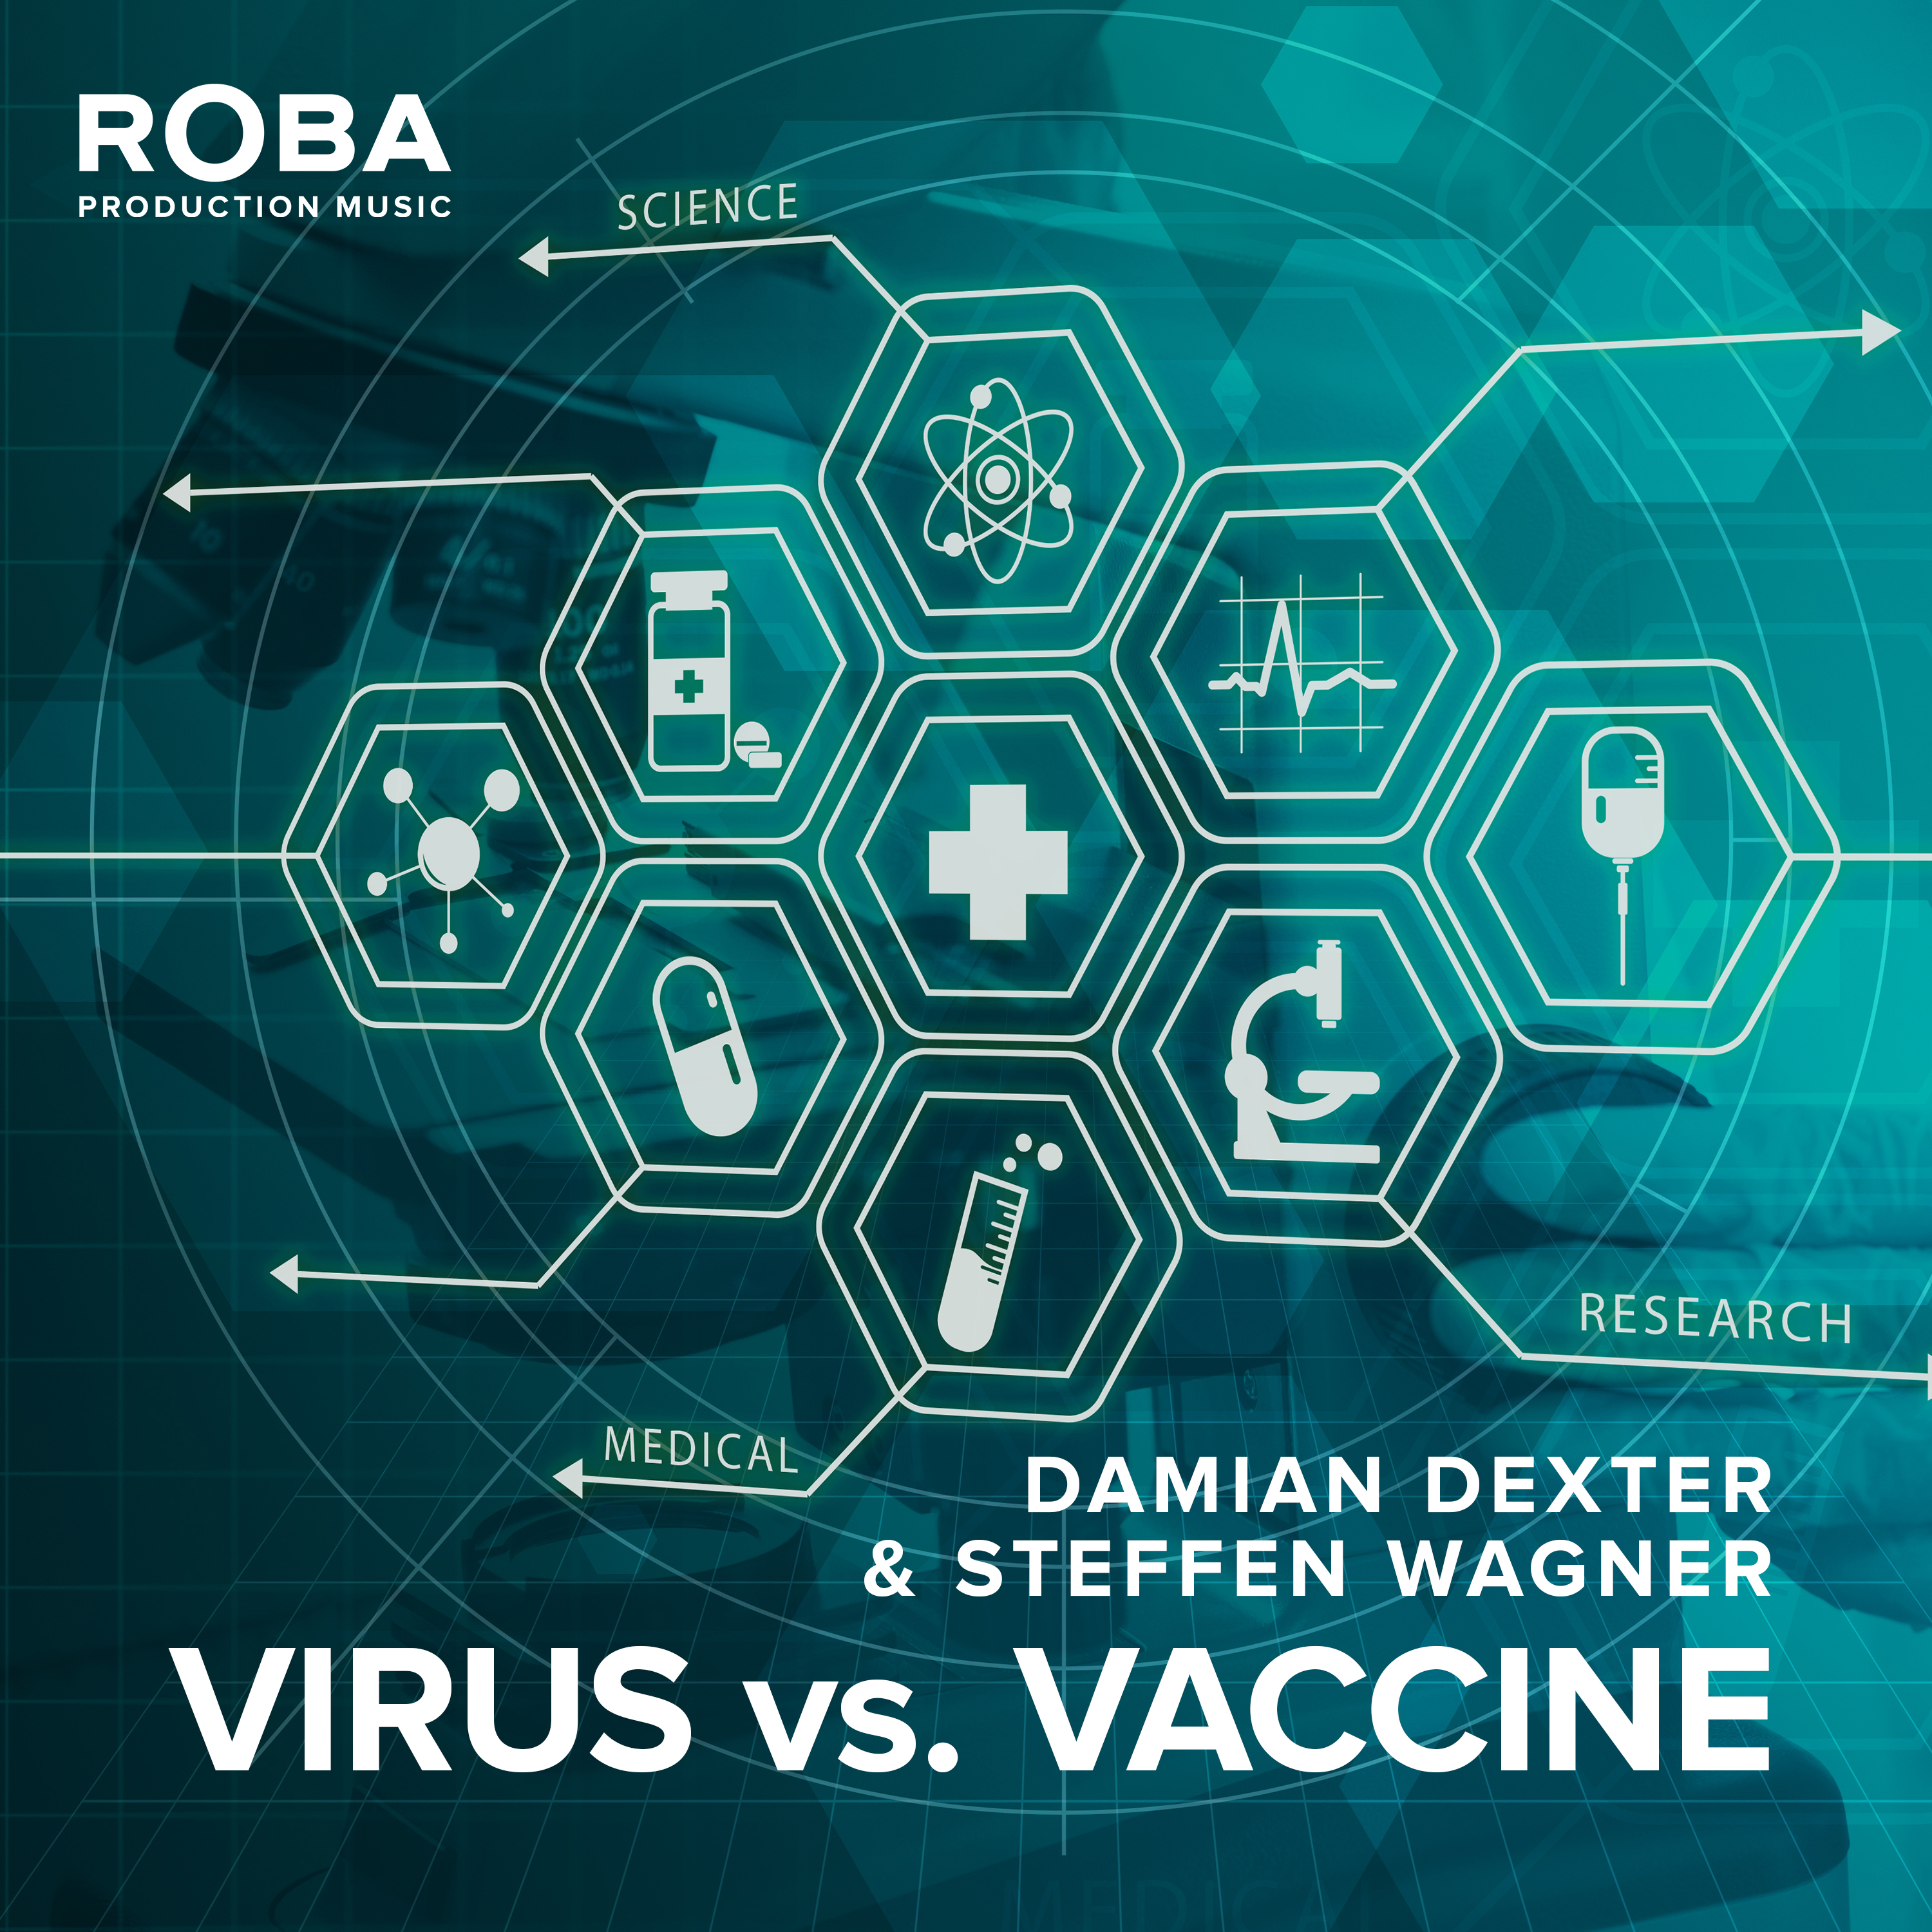 Virus vs. Vaccine